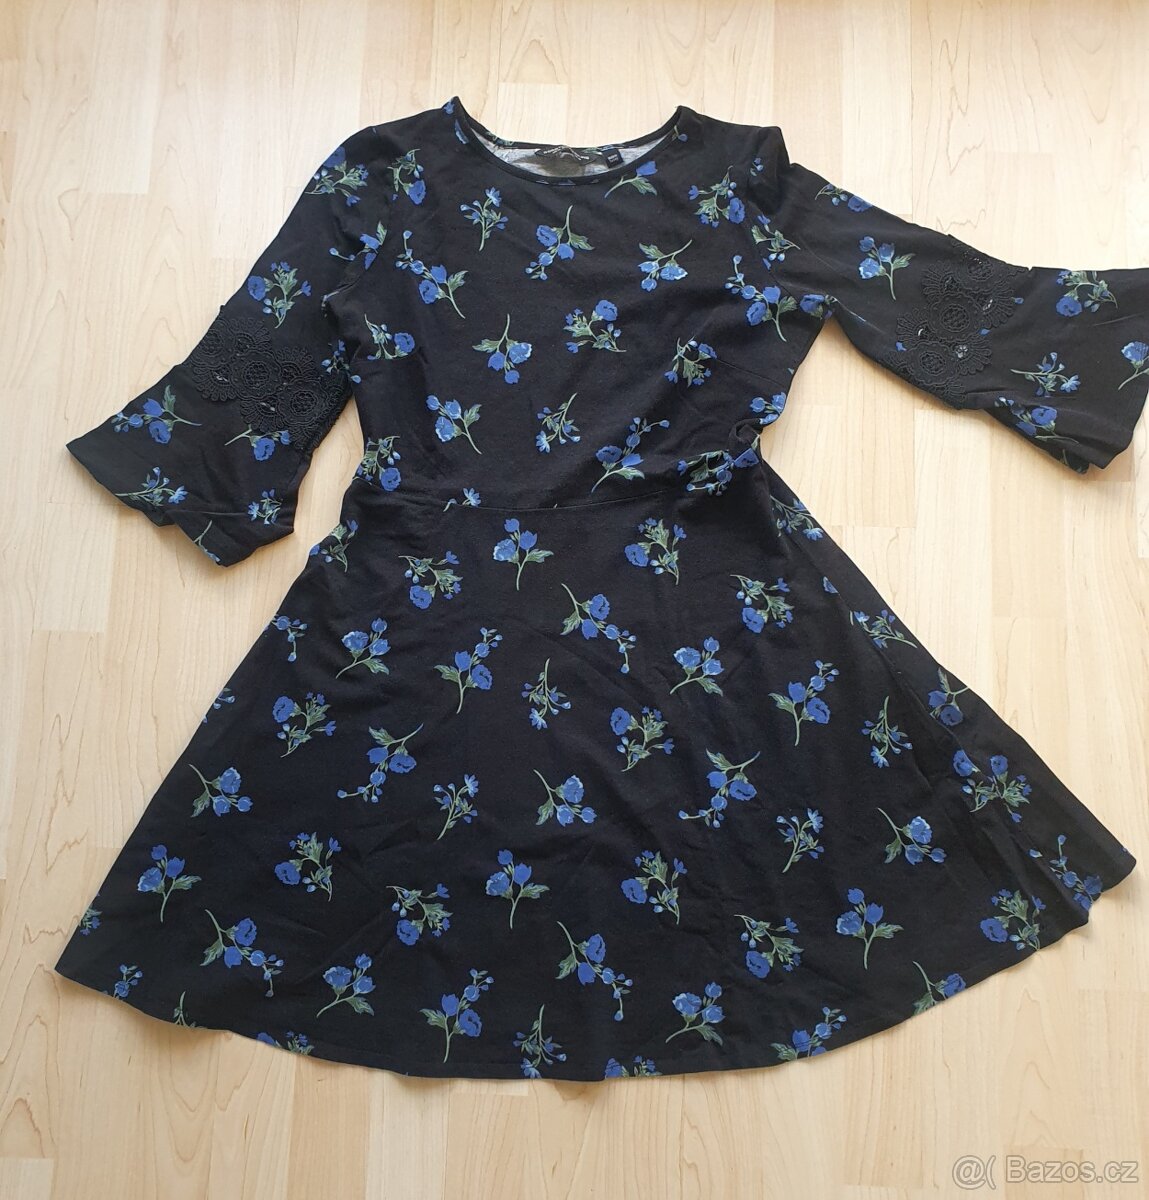 Elastické dámské šaty vel. 42 - černé s květinovým potiskem.